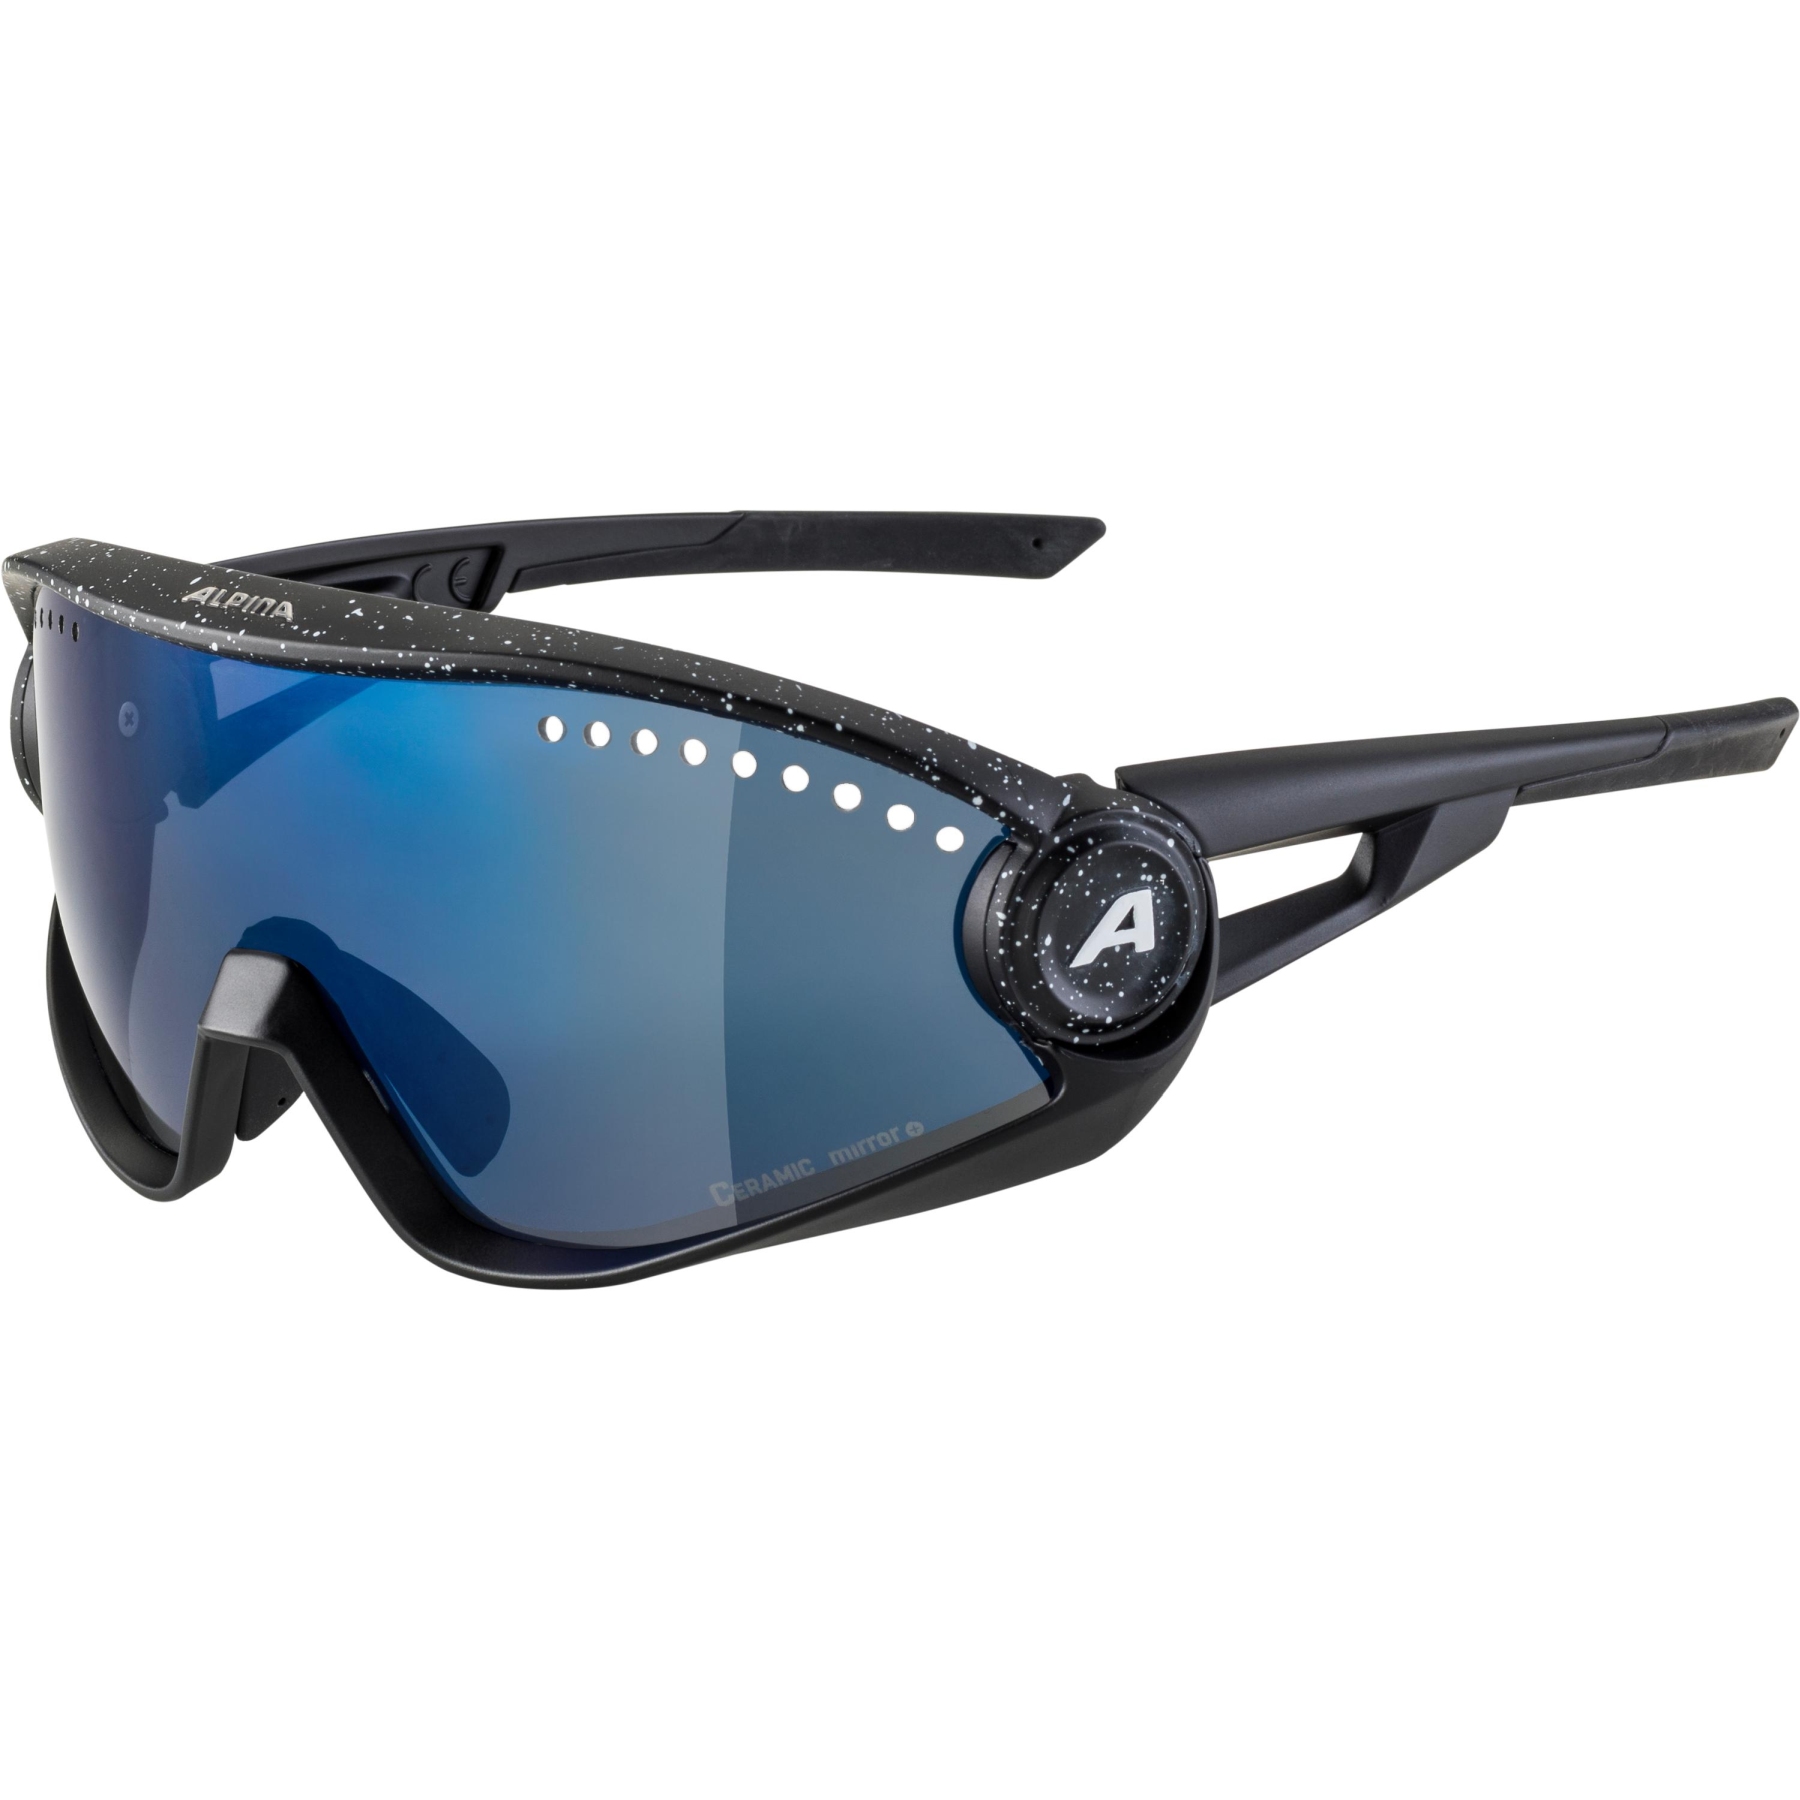 Produktbild von Alpina 5W1NG Brille - black blur / blue mirror